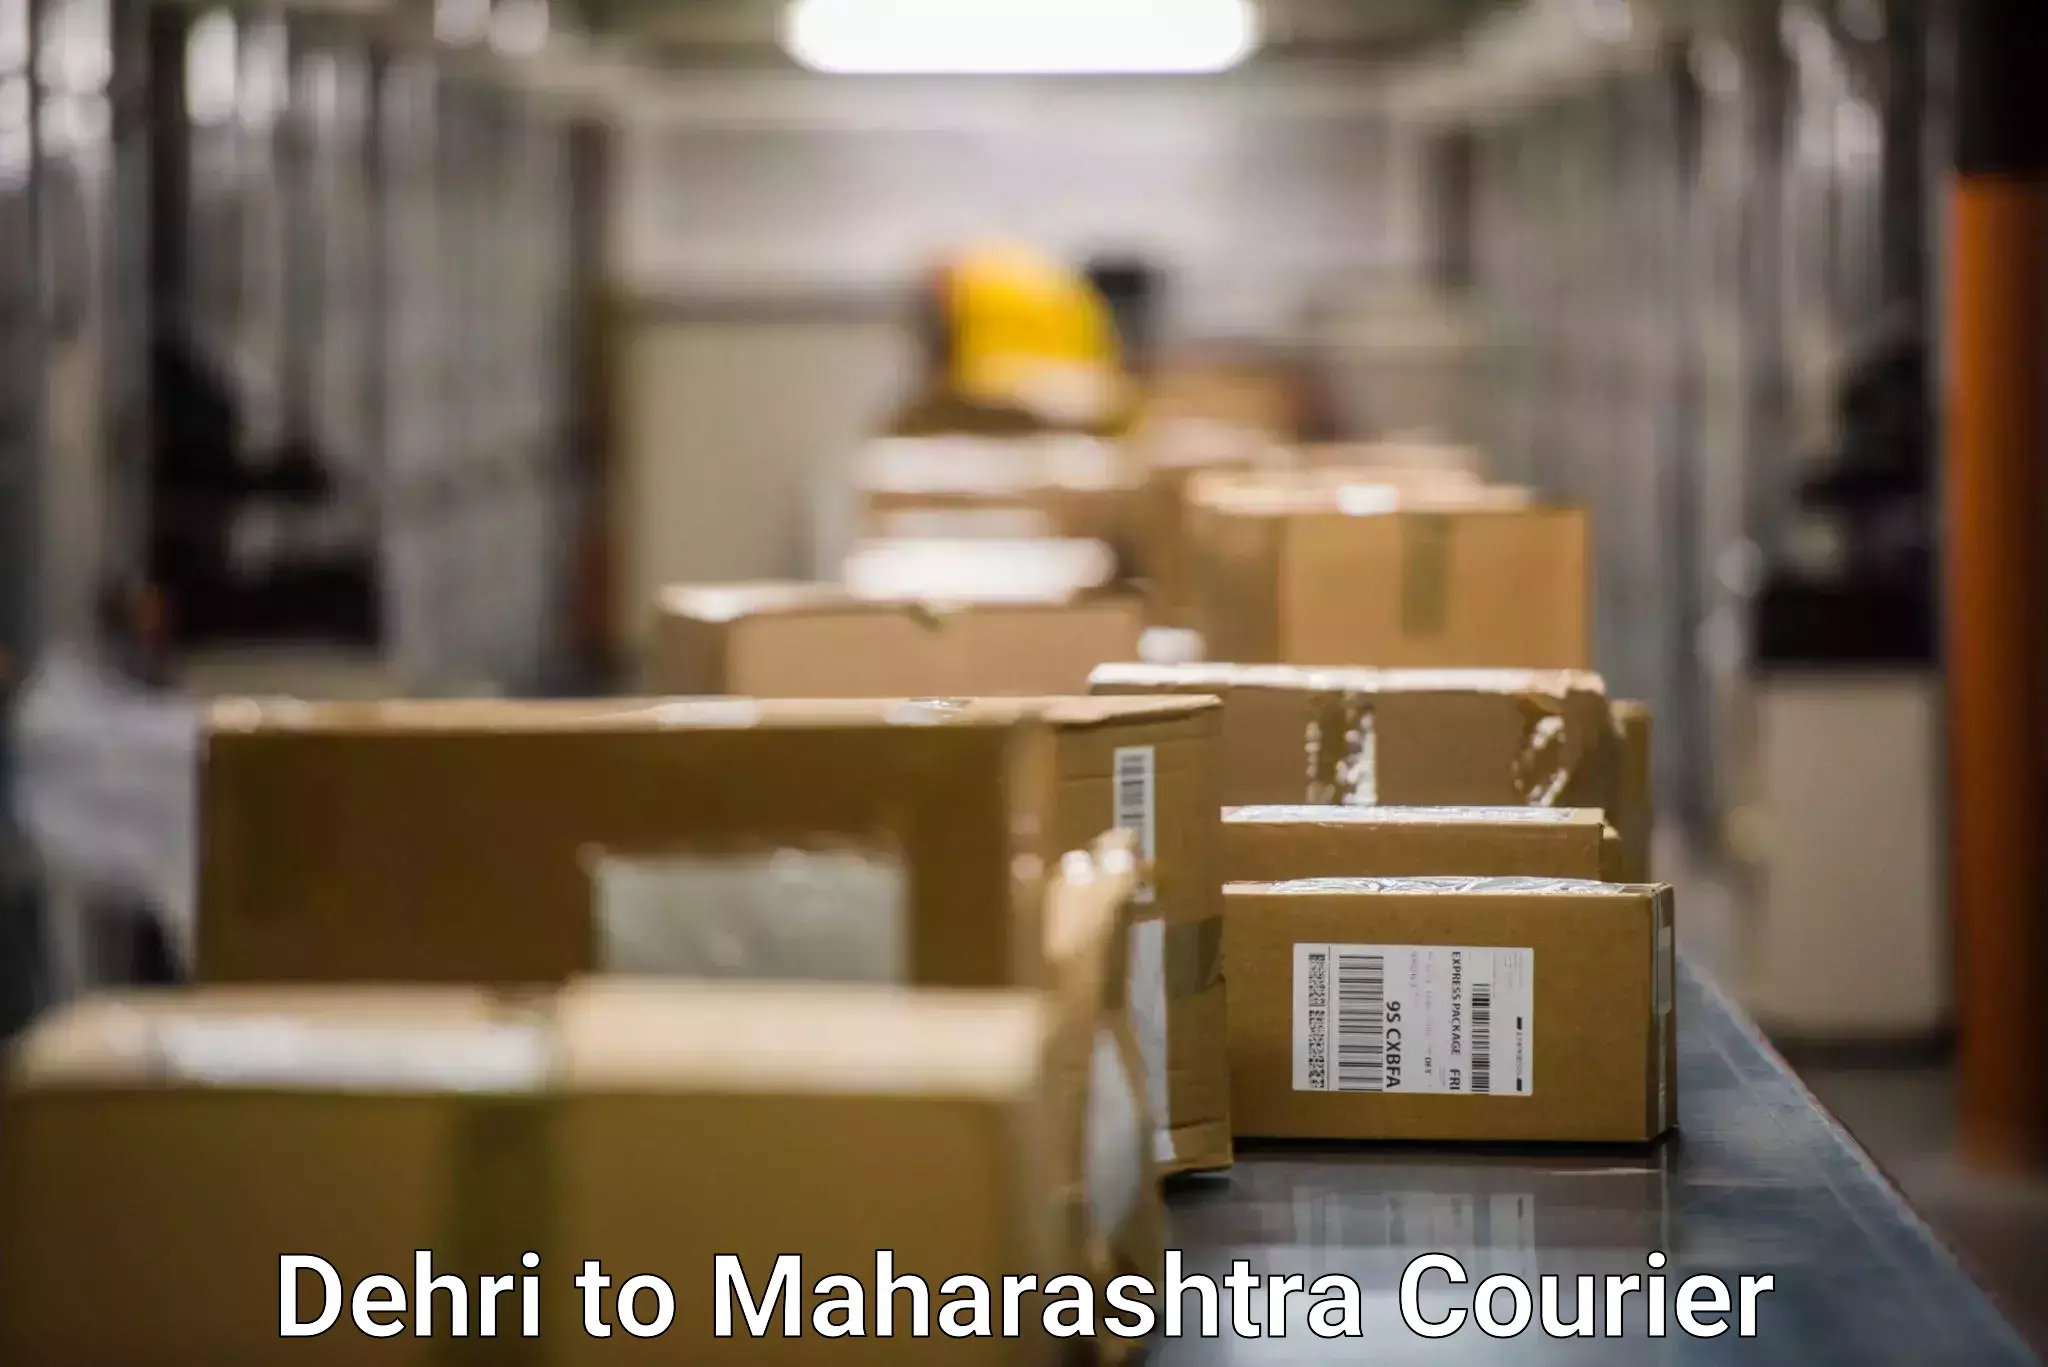 Premium courier solutions Dehri to Mumbai Port